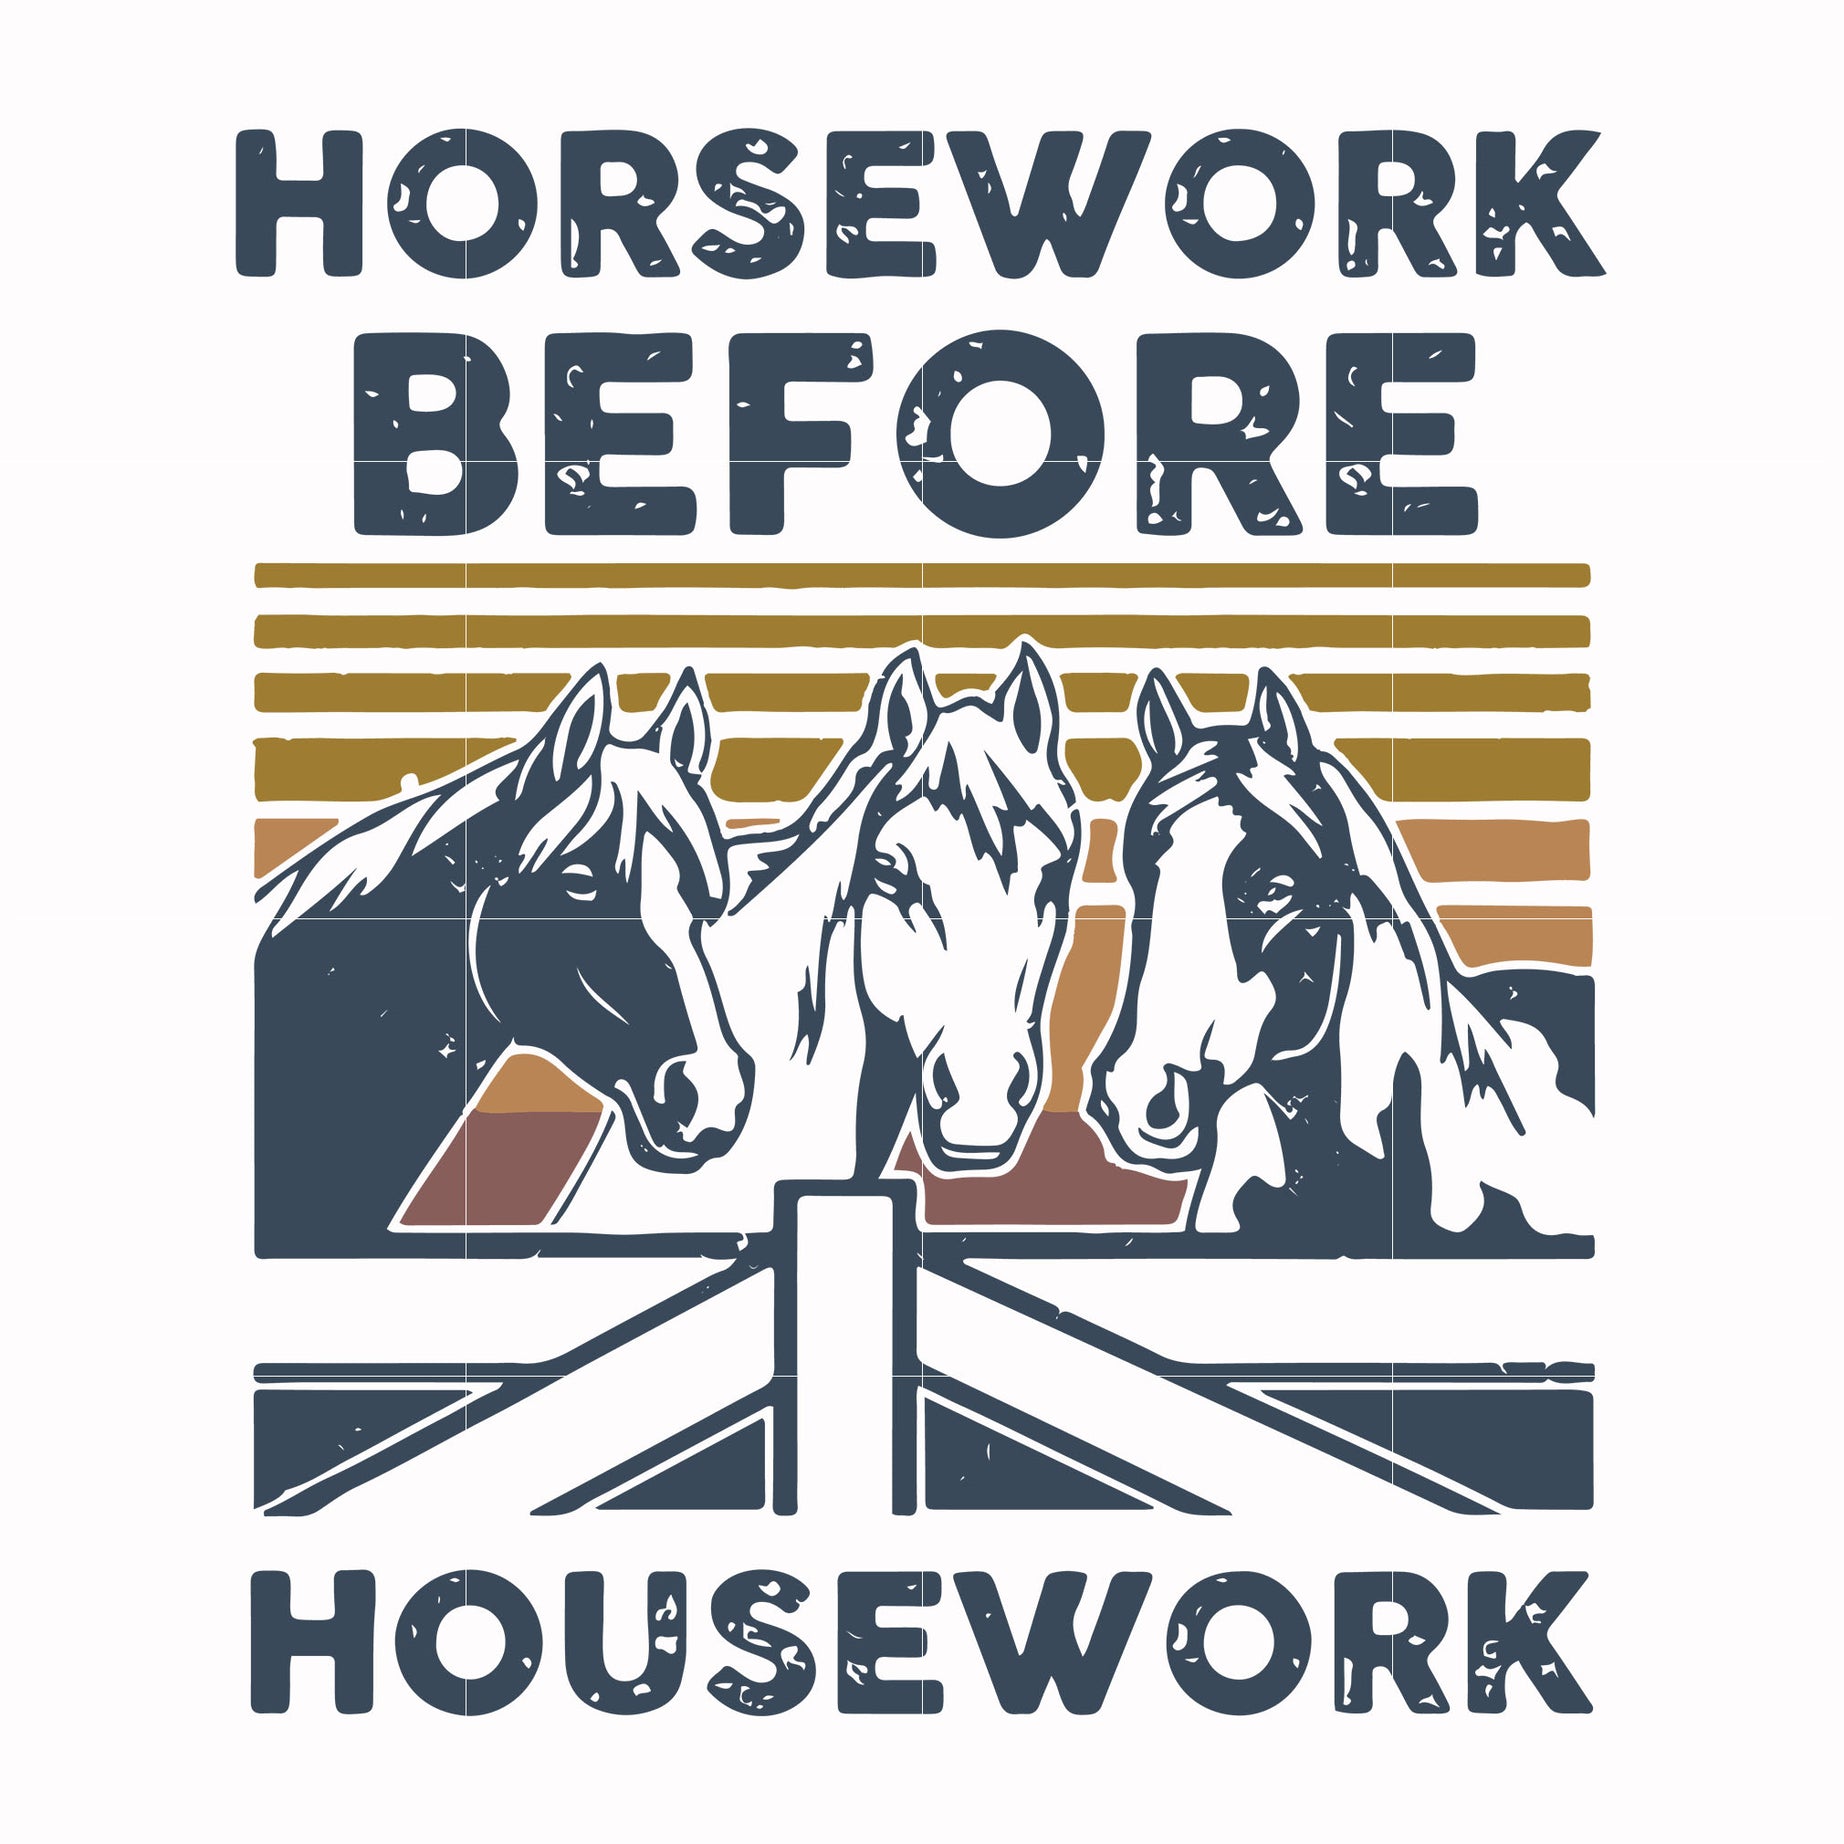 Horsework before housework svg, png, dxf, eps digital file TD31072039